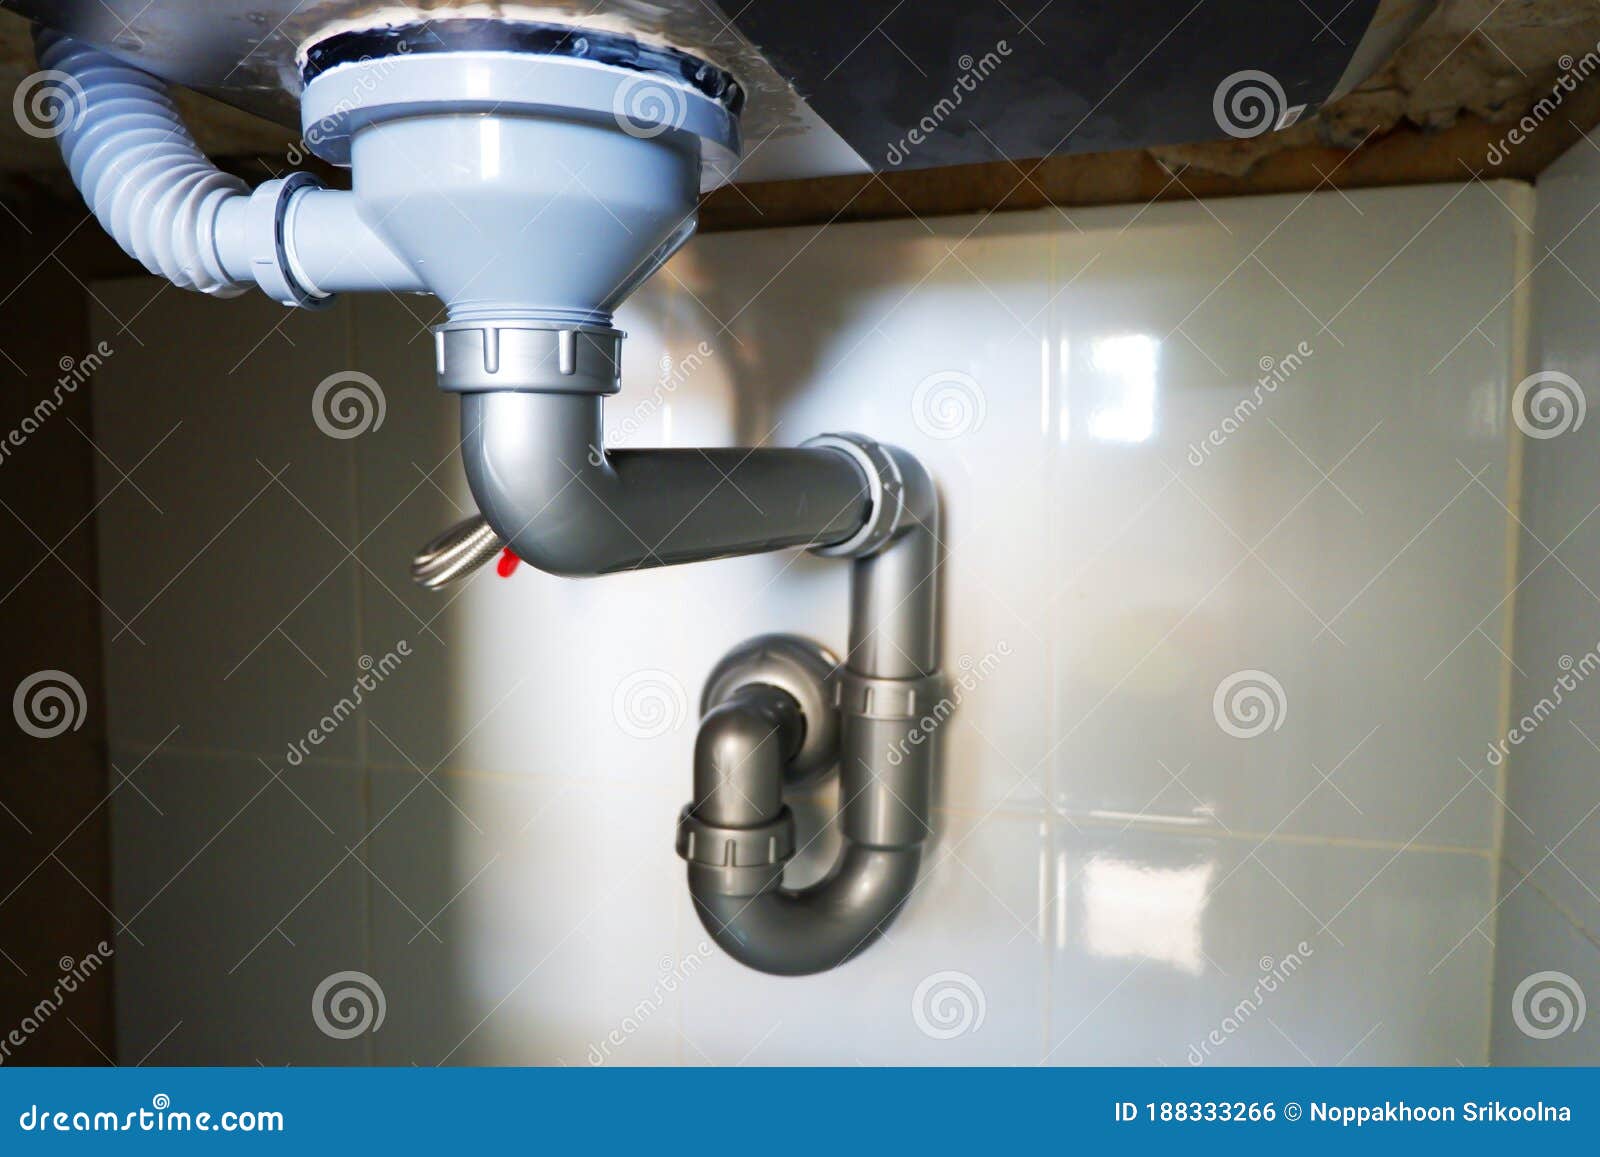 sewer water in kitchen sink